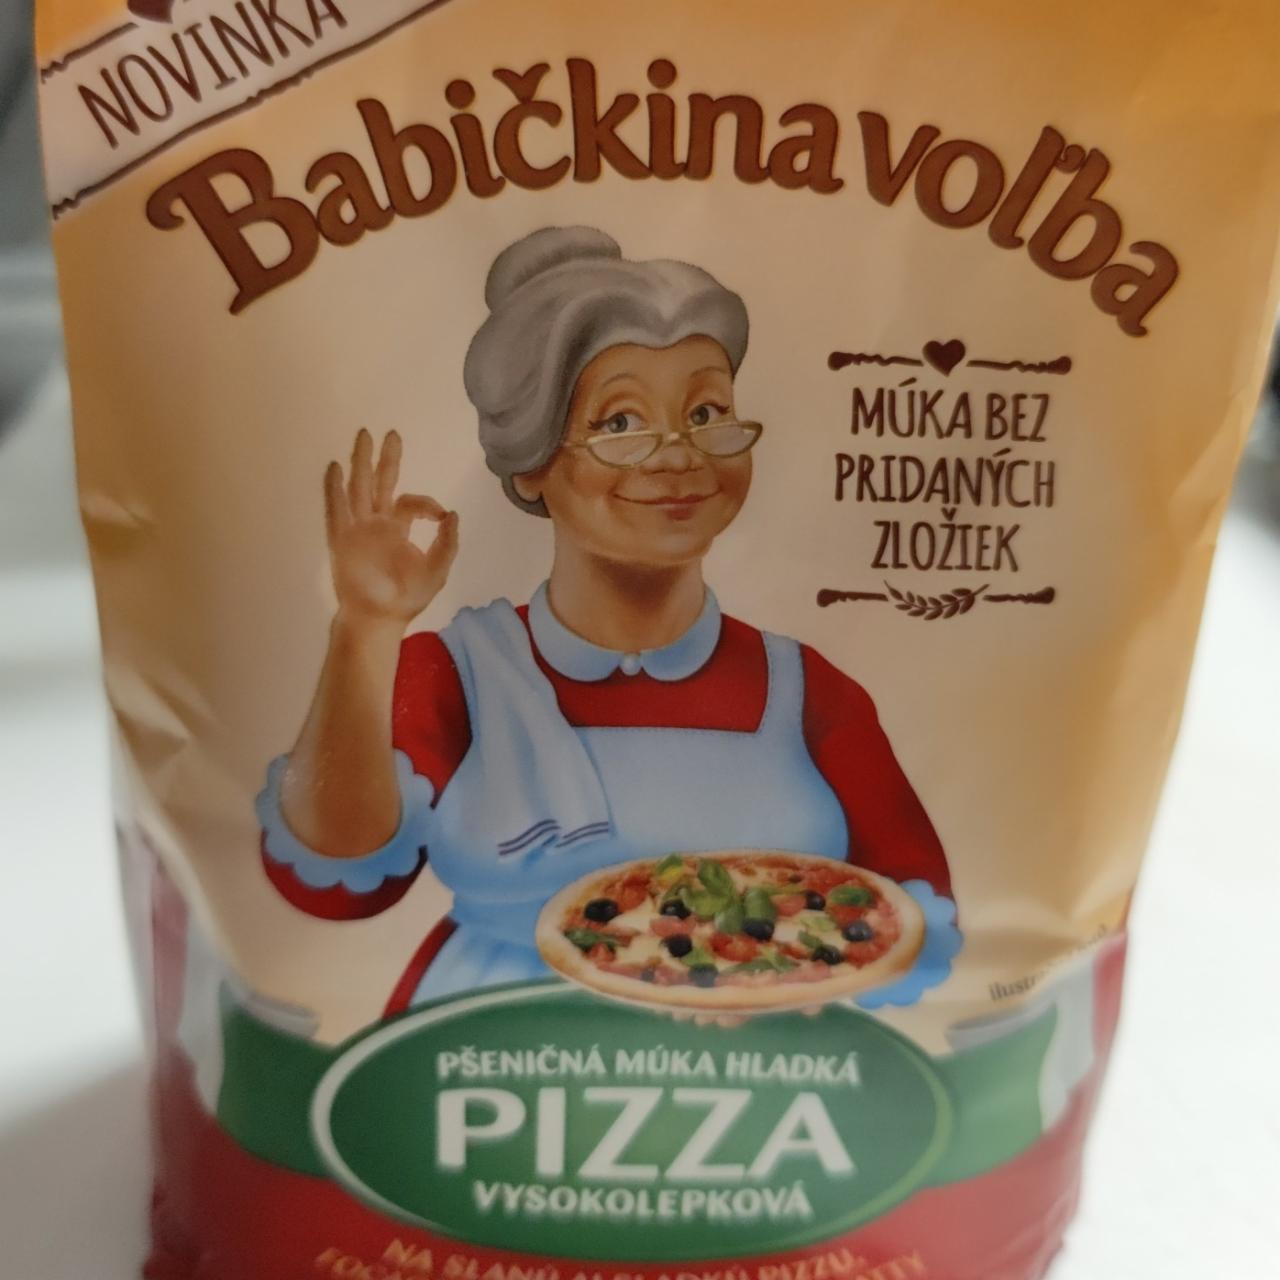 Fotografie - Pšeničná múka hladká Pizza vysokolepková Babičkina Voľba